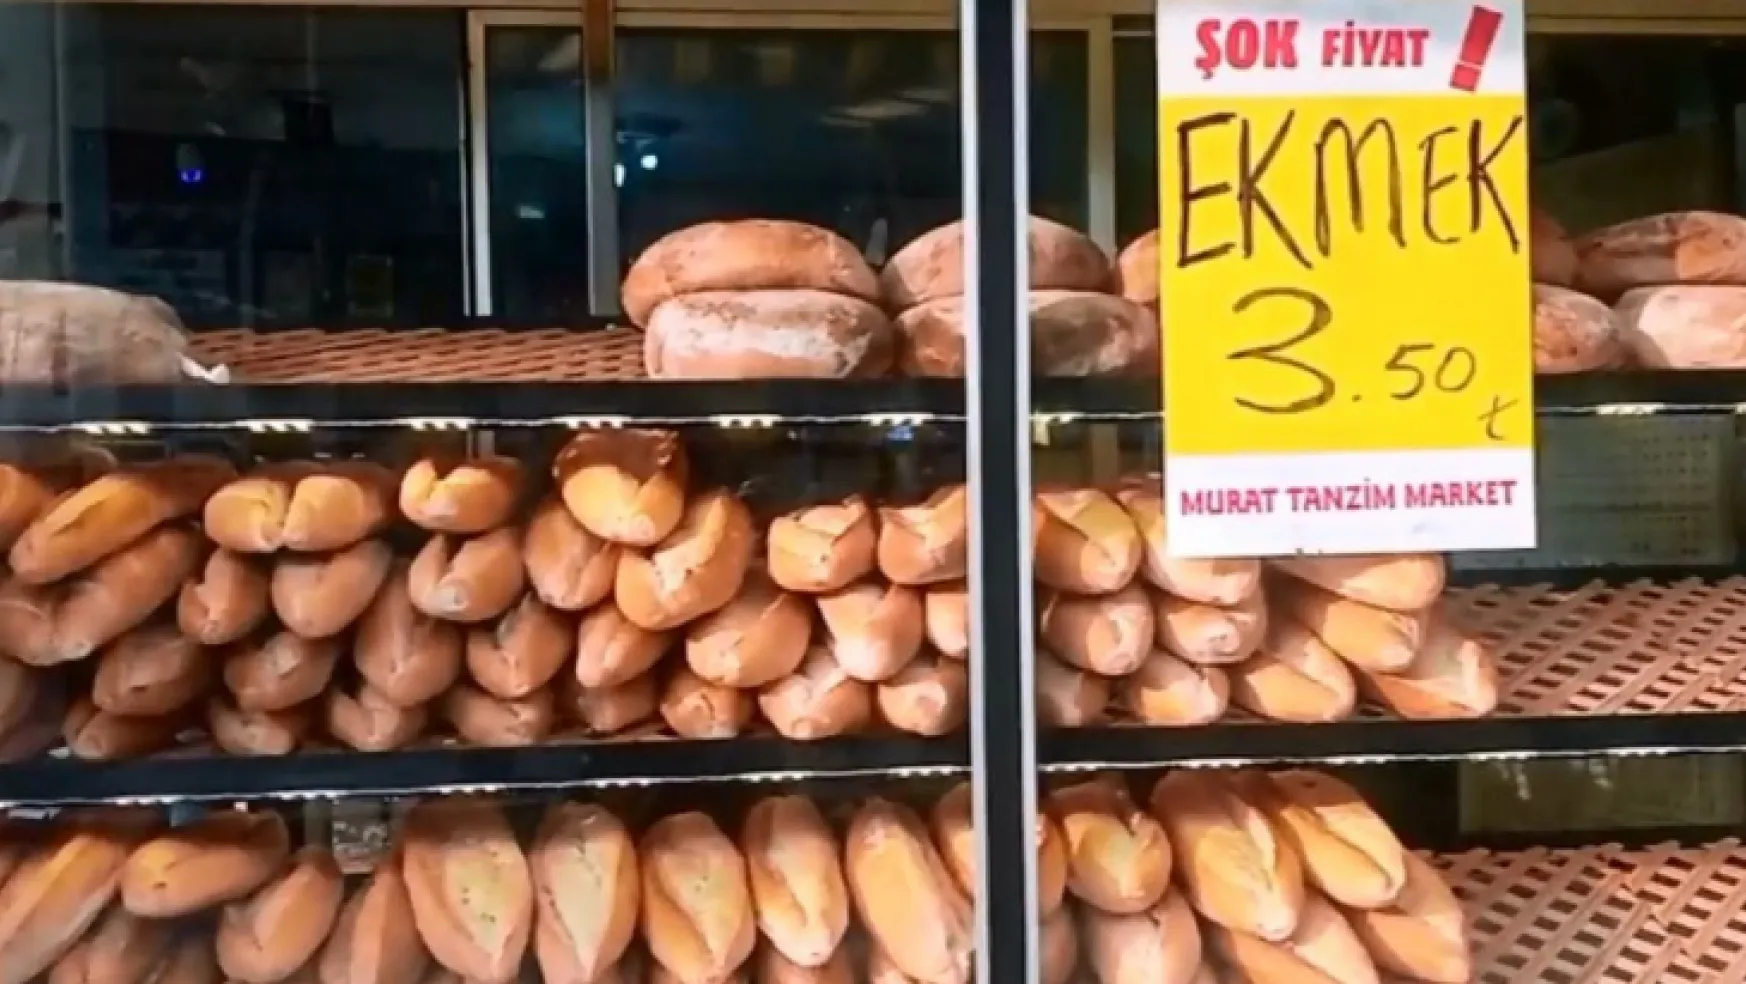 Fırıncılara Kızıp Ekmek Fiyatını 3.5 Tl'ye Düşürdü